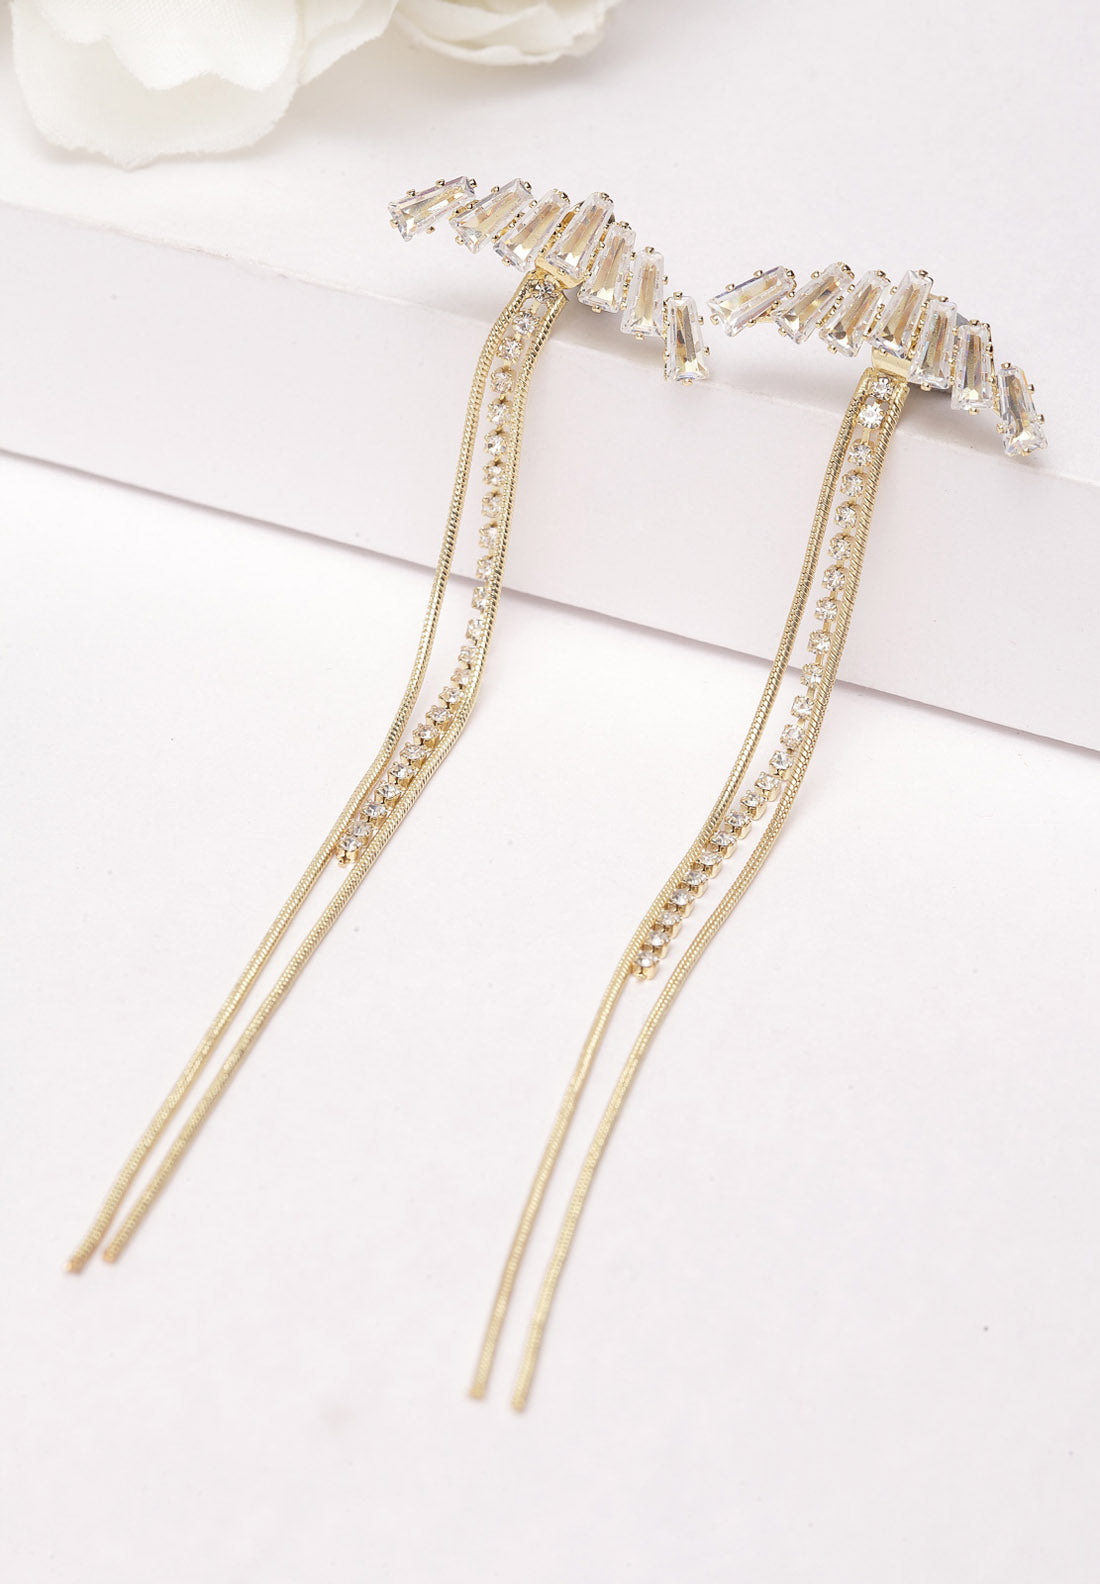 Guld kristall långa hängande örhängen